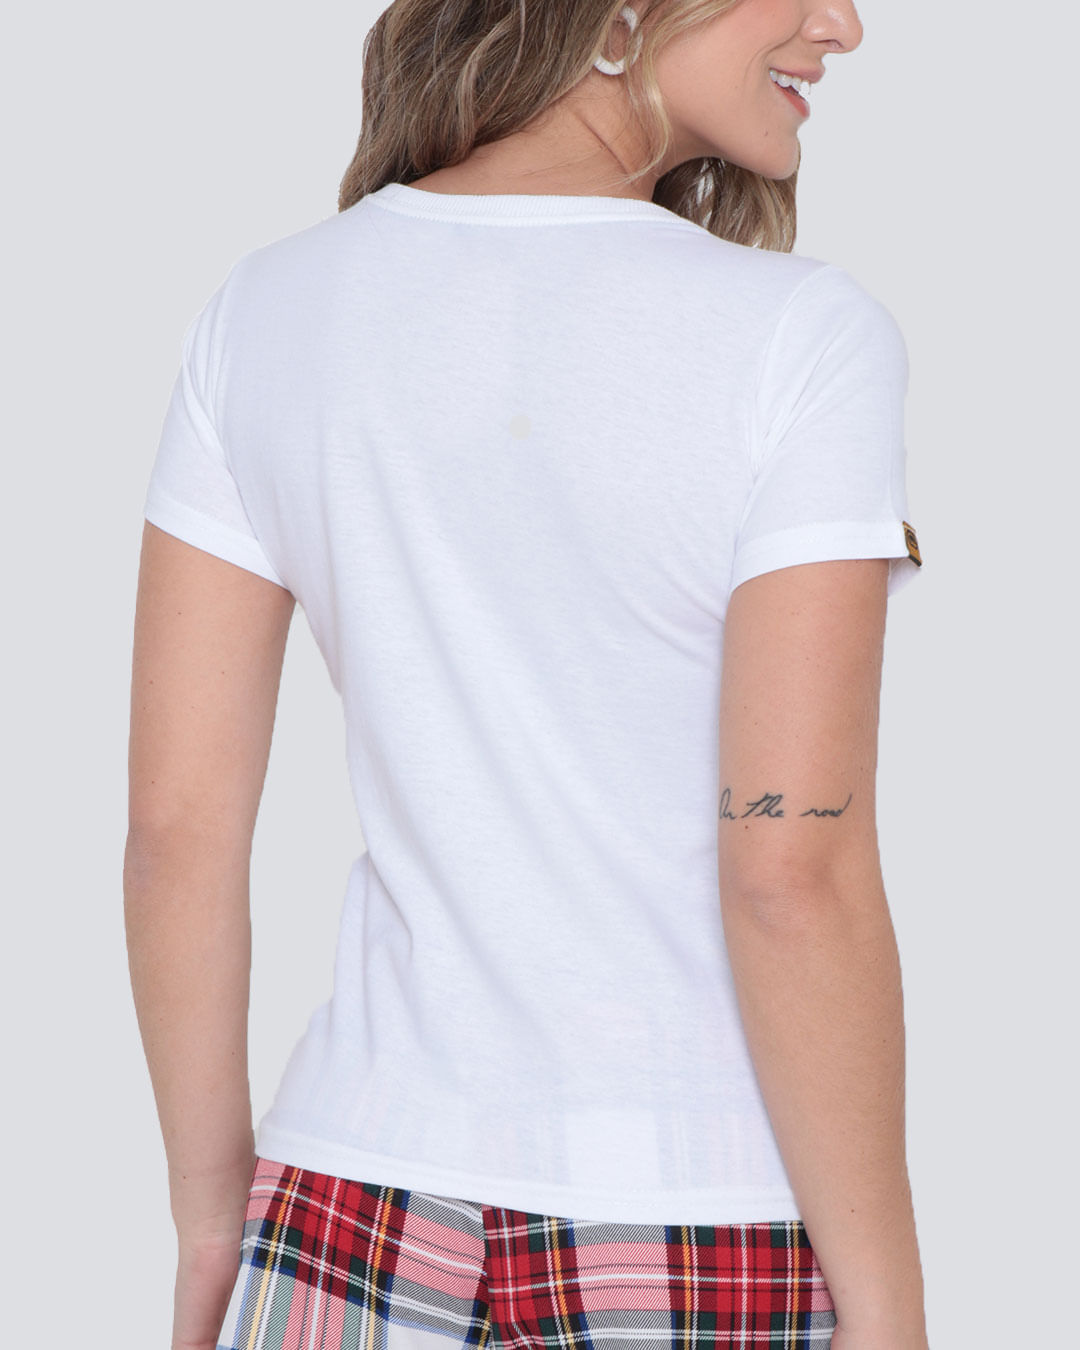 Camiseta-Feminina-Estampa-Ecko-Red-Off-White